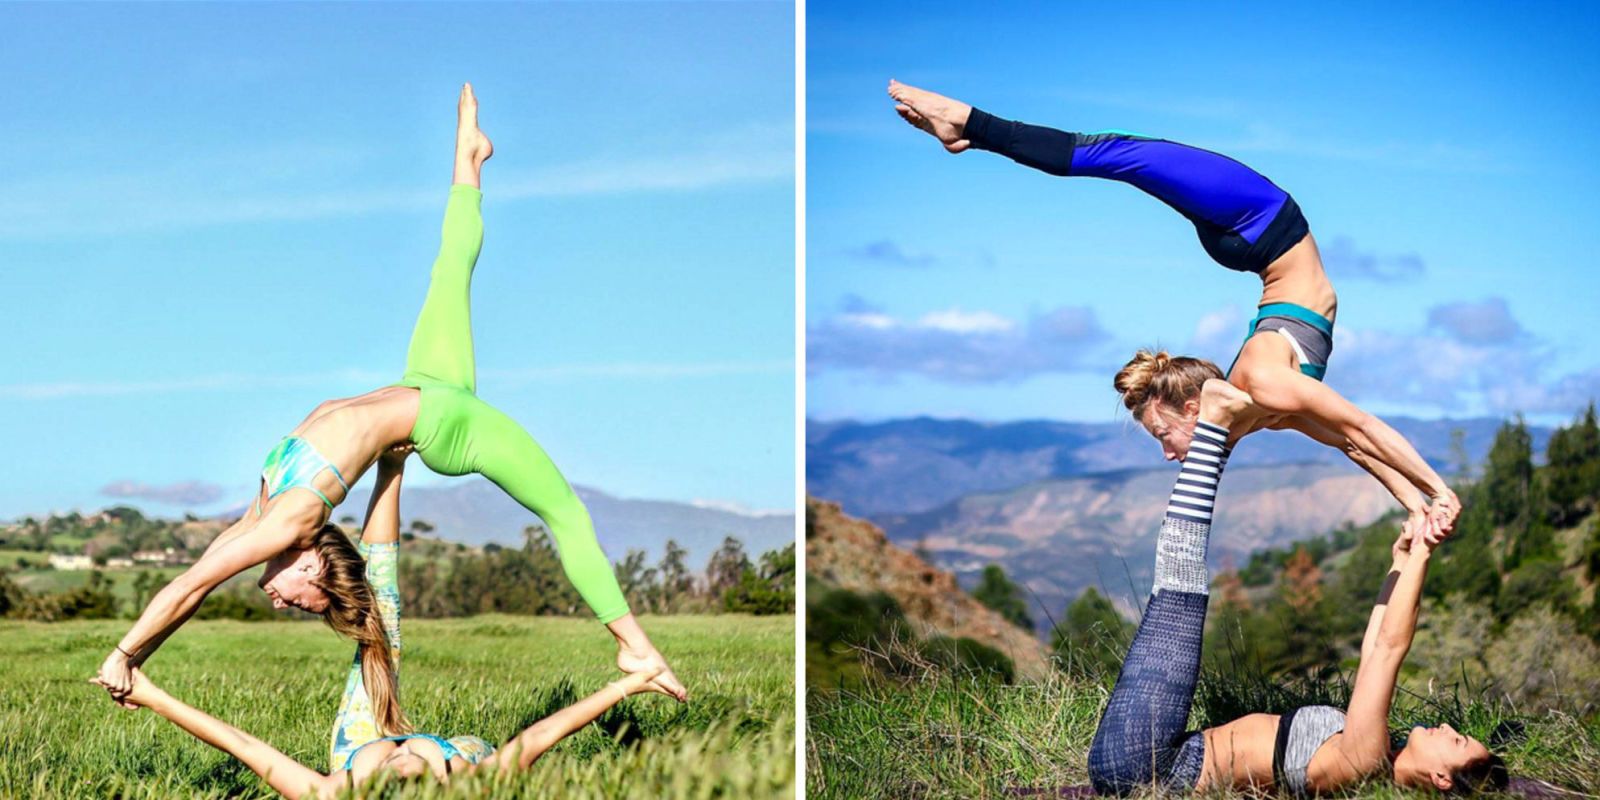 AcroYoga Lifestyle | Acro yoga, Three person yoga poses, 3 person yoga poses